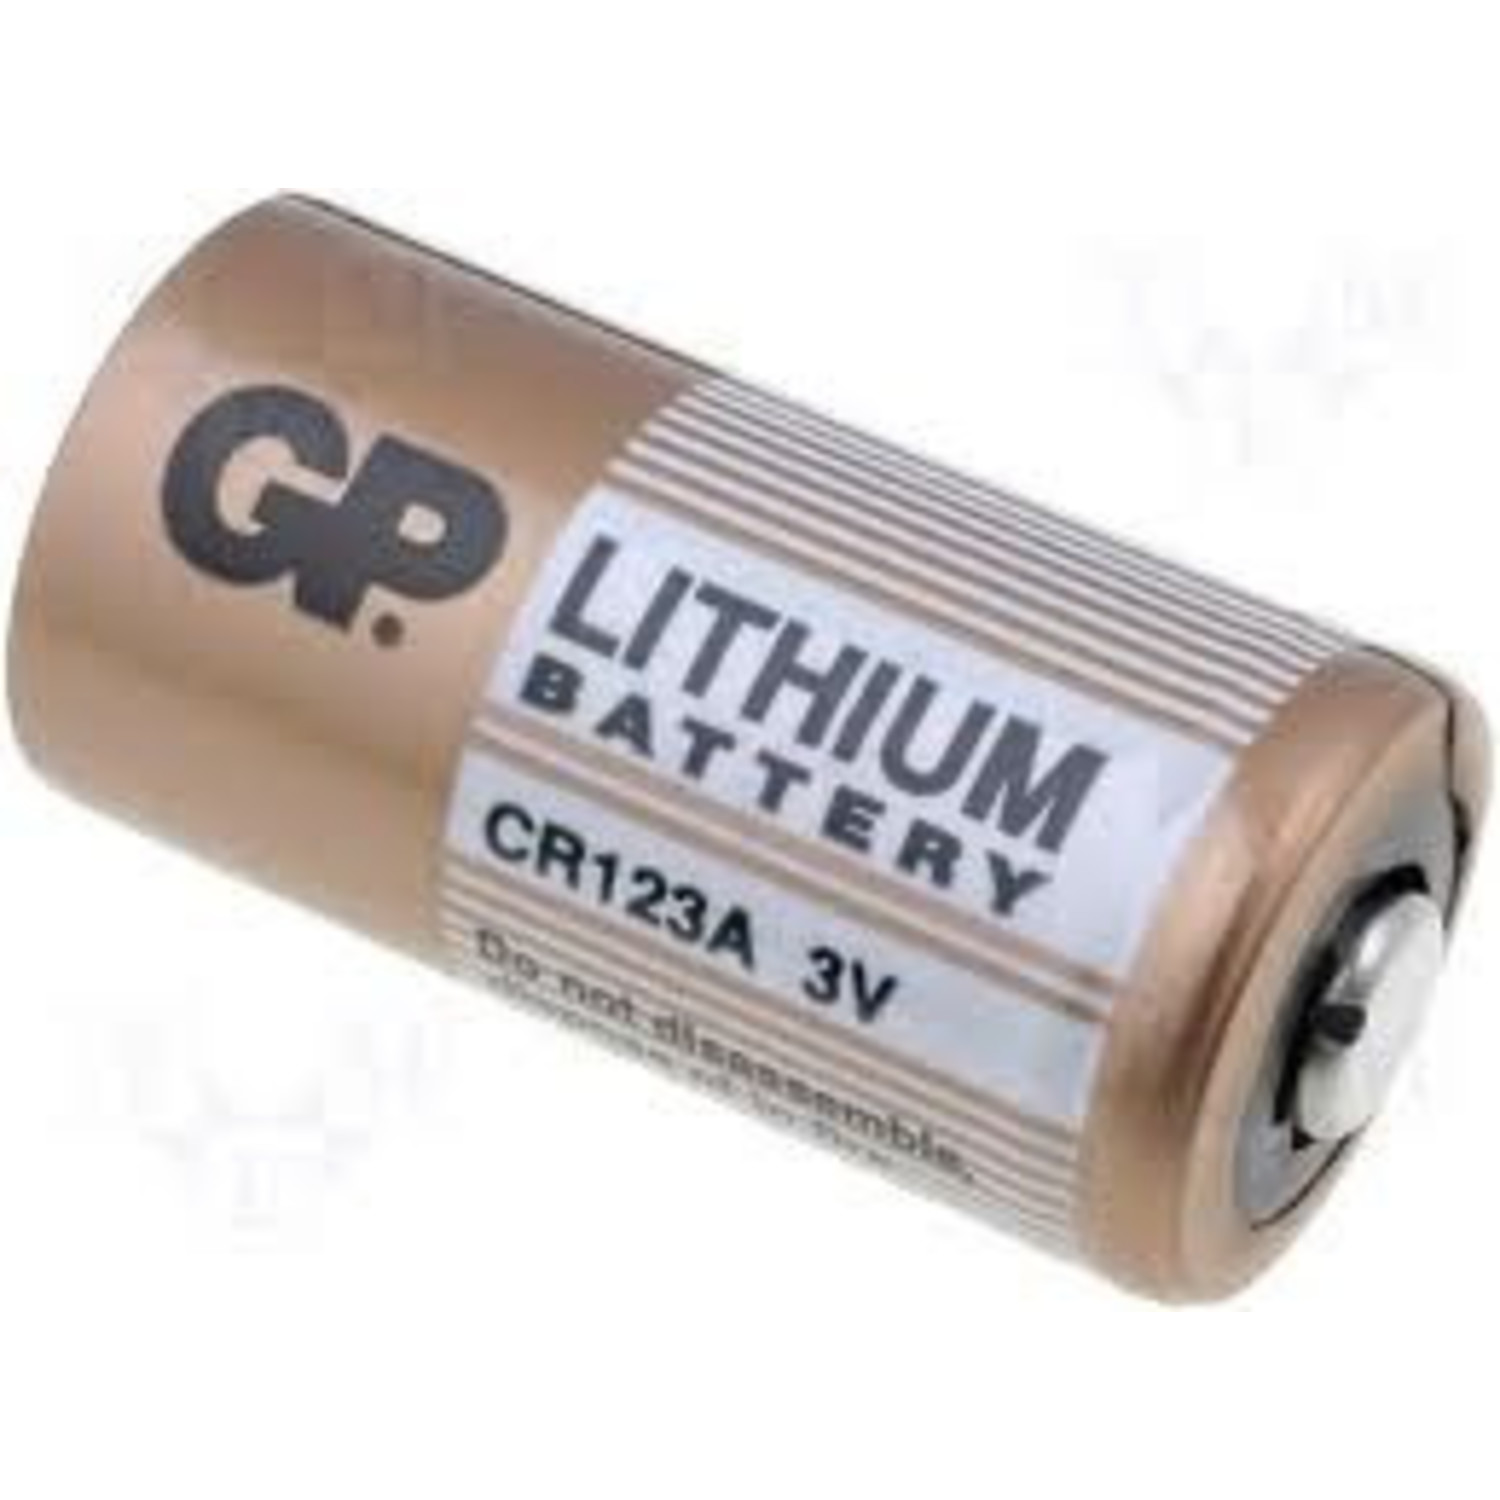 diameter Formulering ik luister naar muziek CR123A Lithium batterij - AlarmsysteemExpert.nl